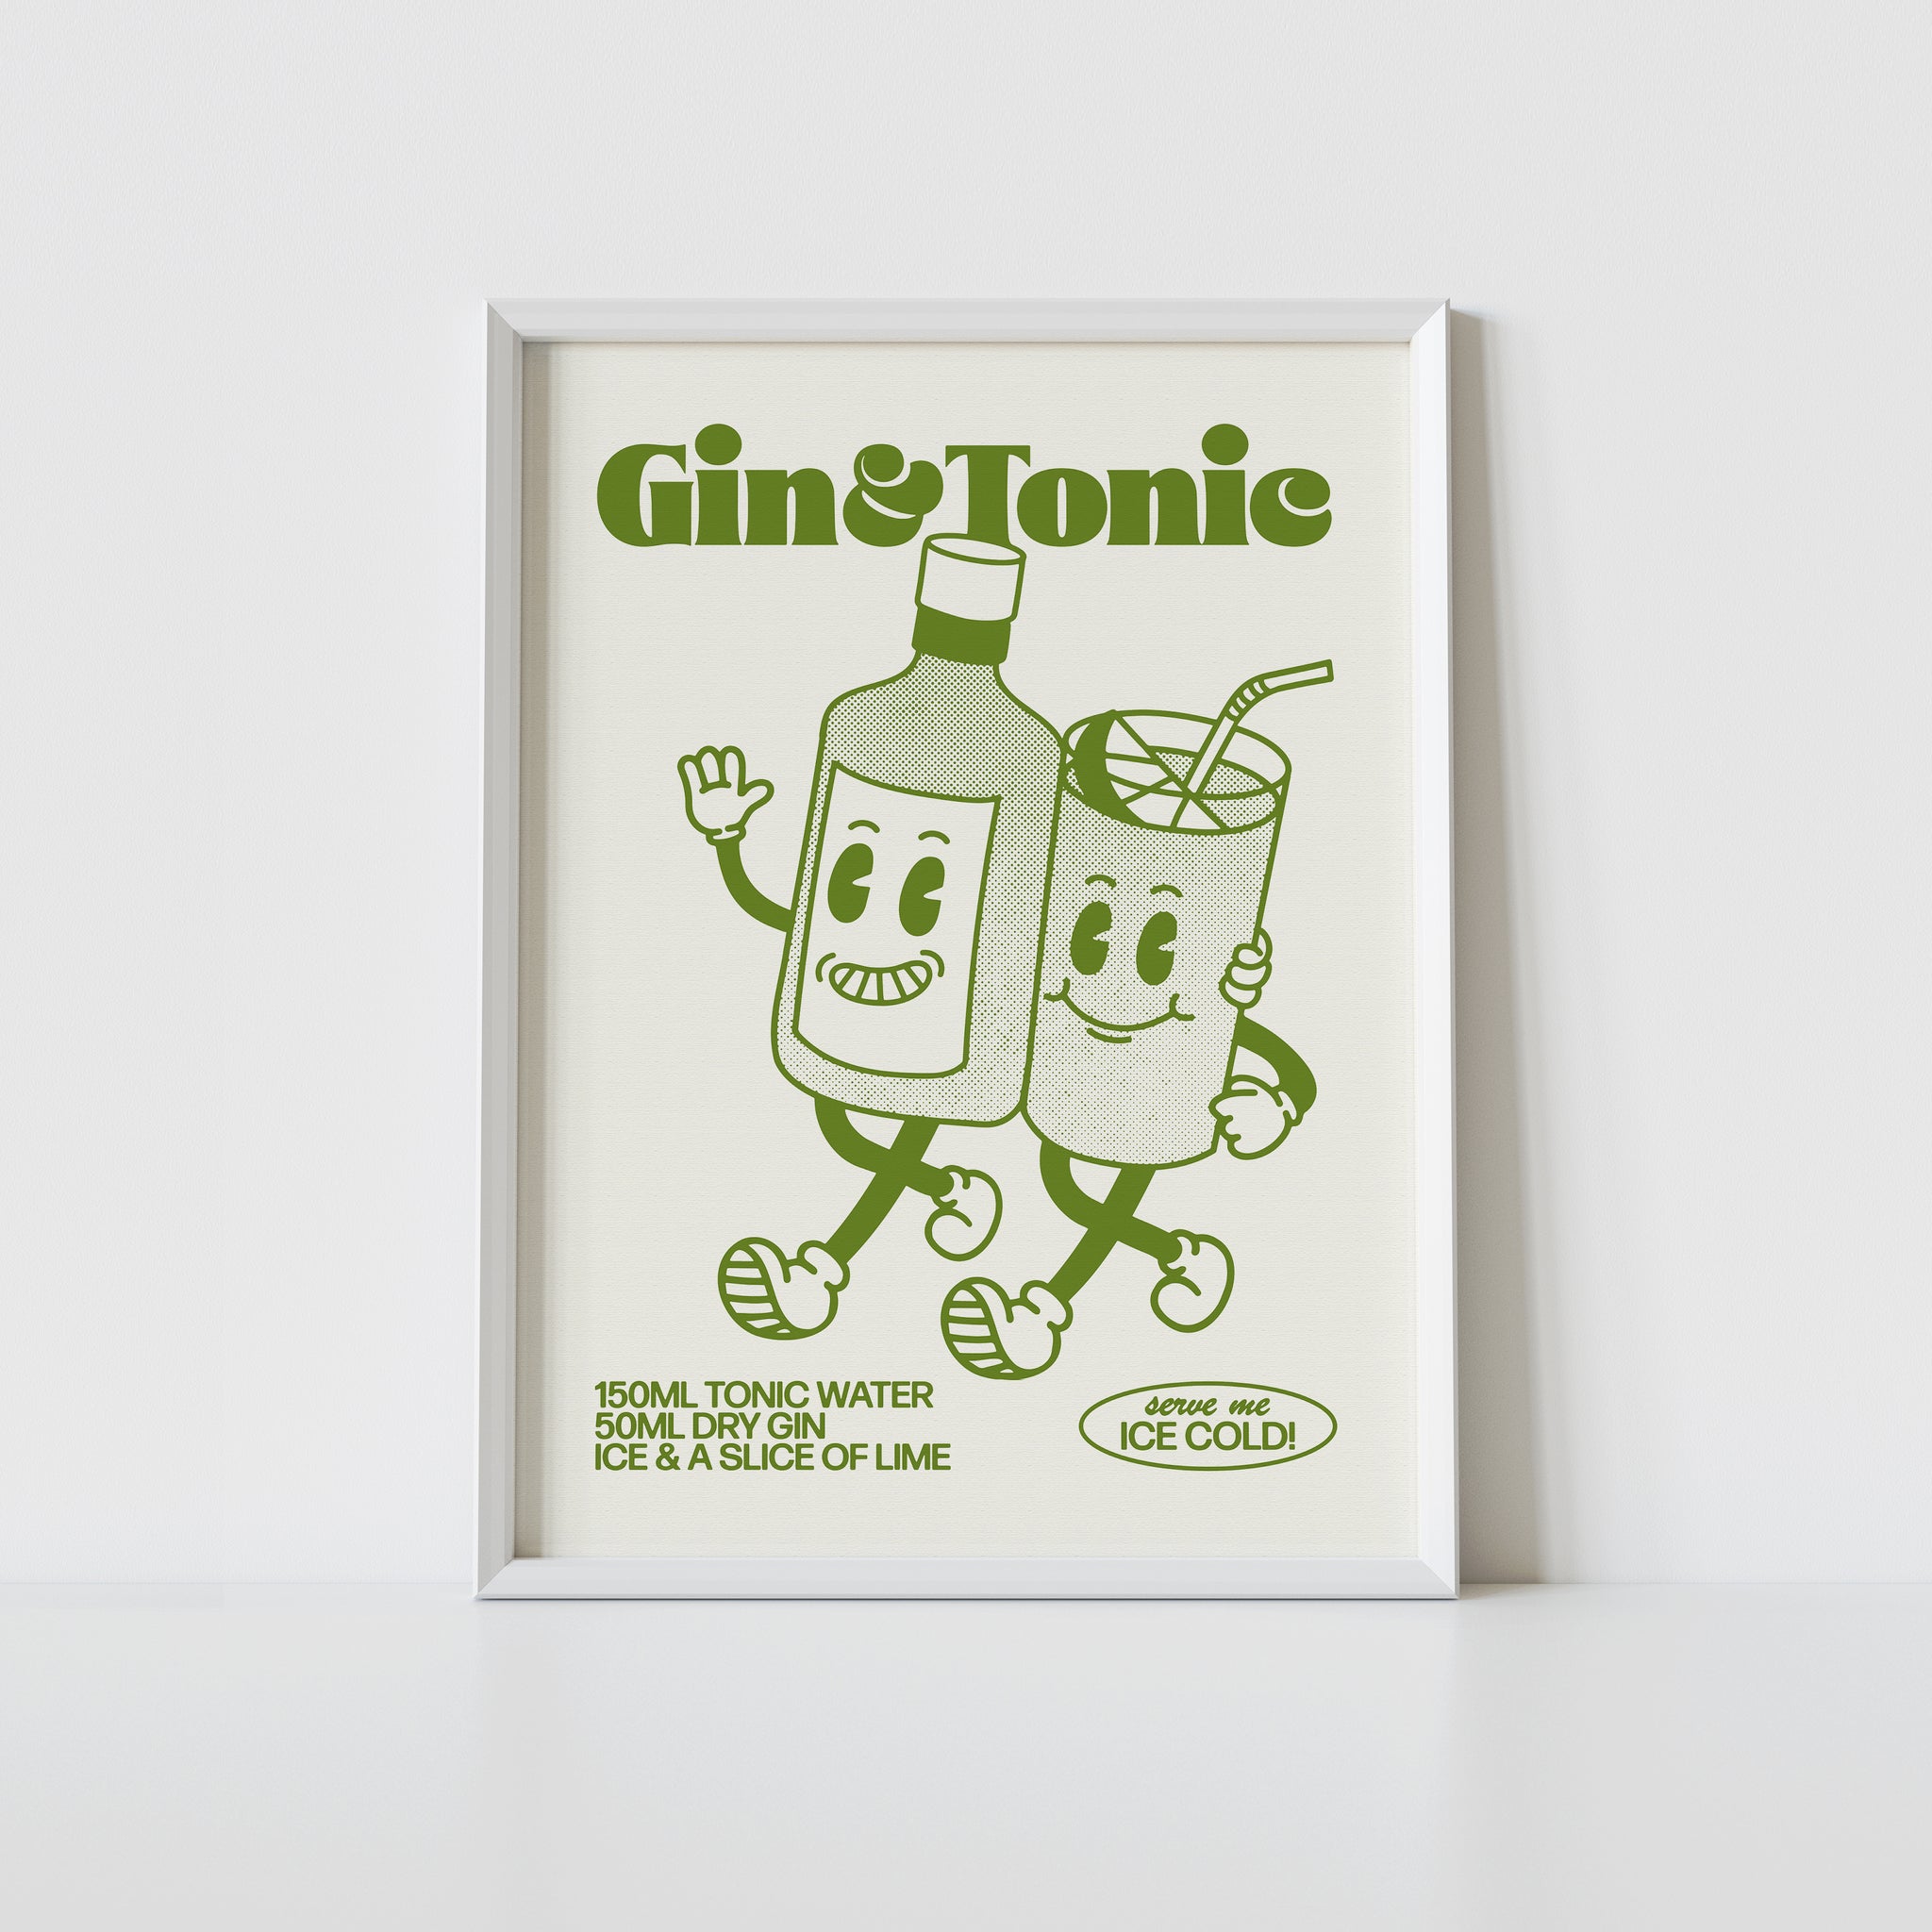 'Gin & Tonic' print